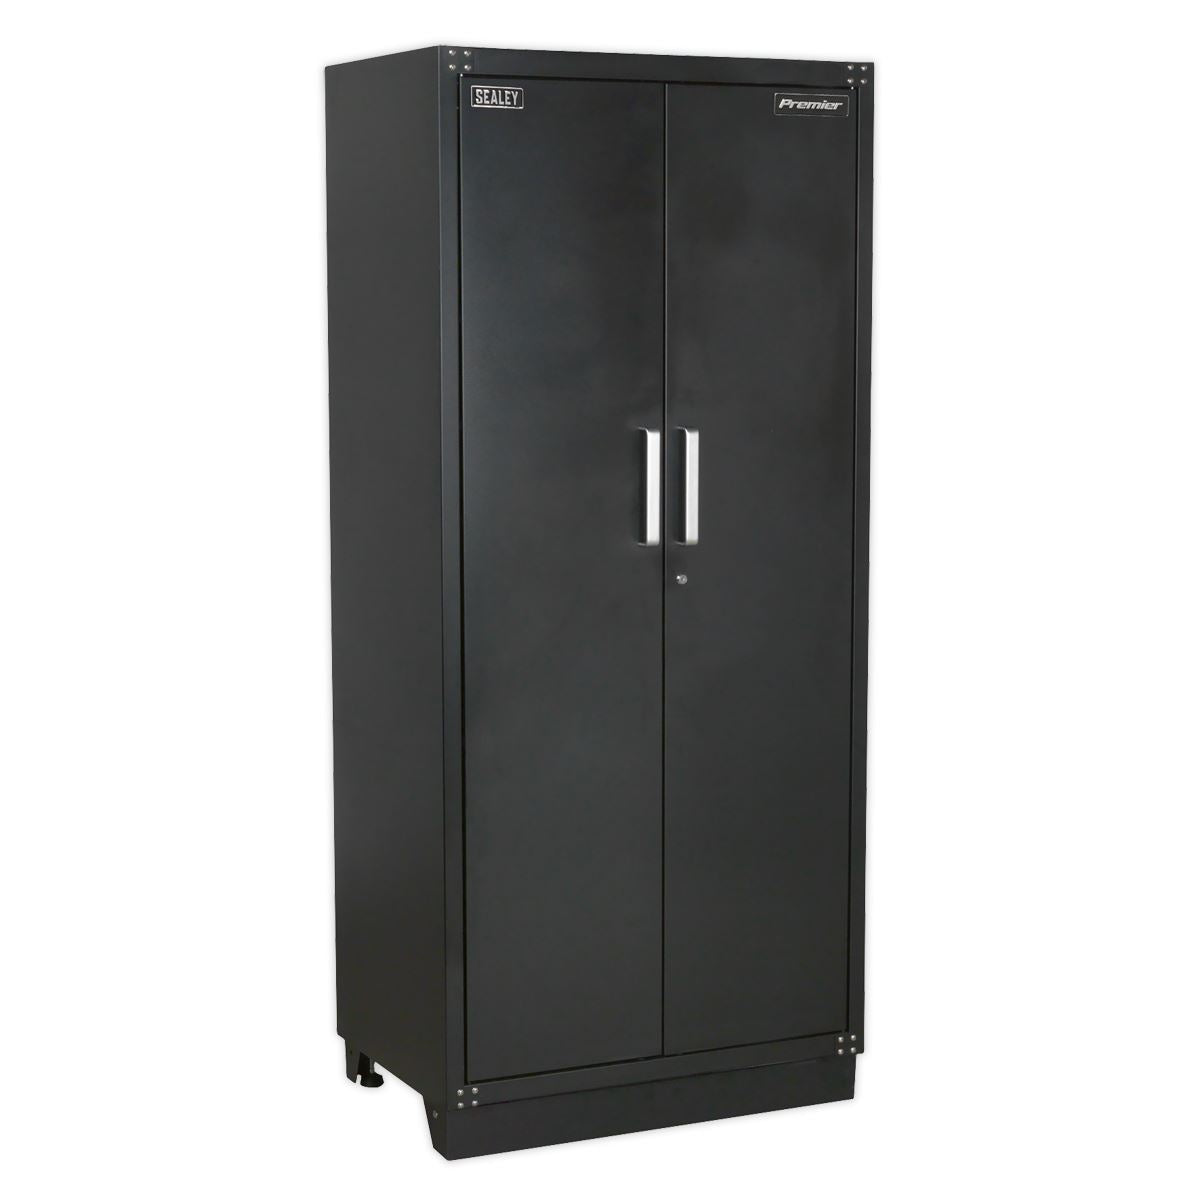 Sealey Premier Modular 2 Door Full Height Floor Cabinet 930mm Heavy-Duty